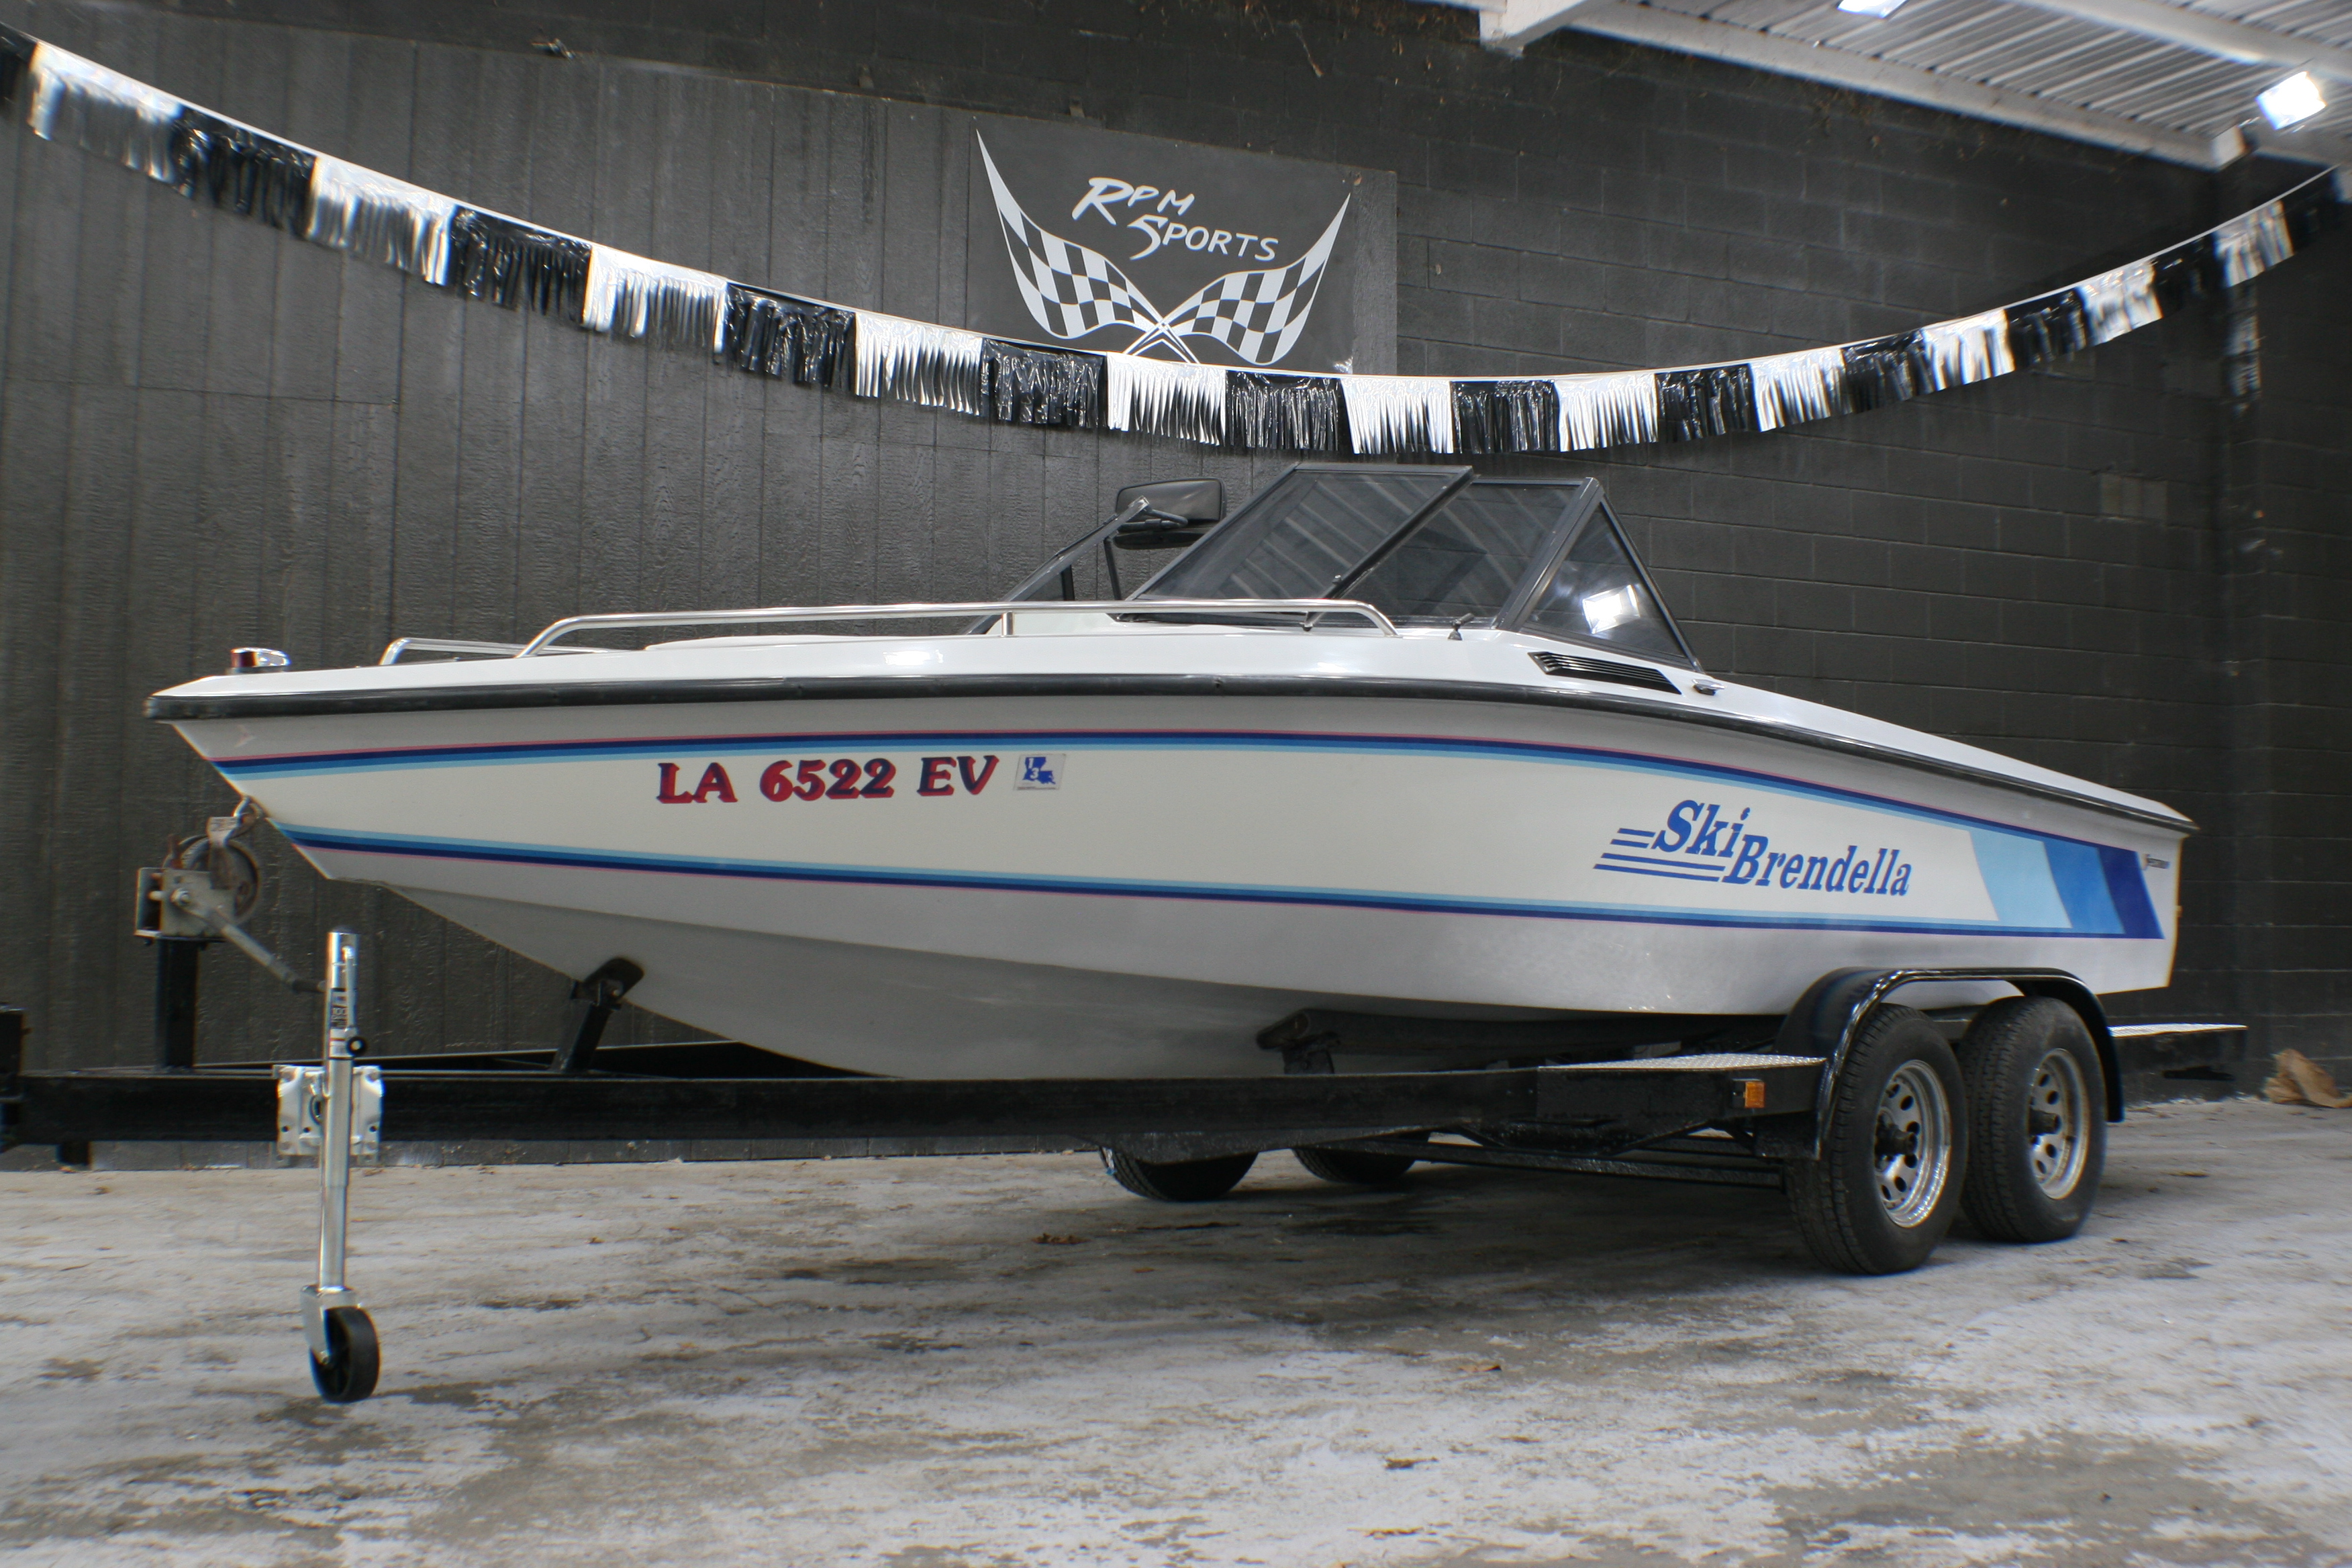 Used Boats For Sale by owner | 1989 20 foot Ski Brendella Ski